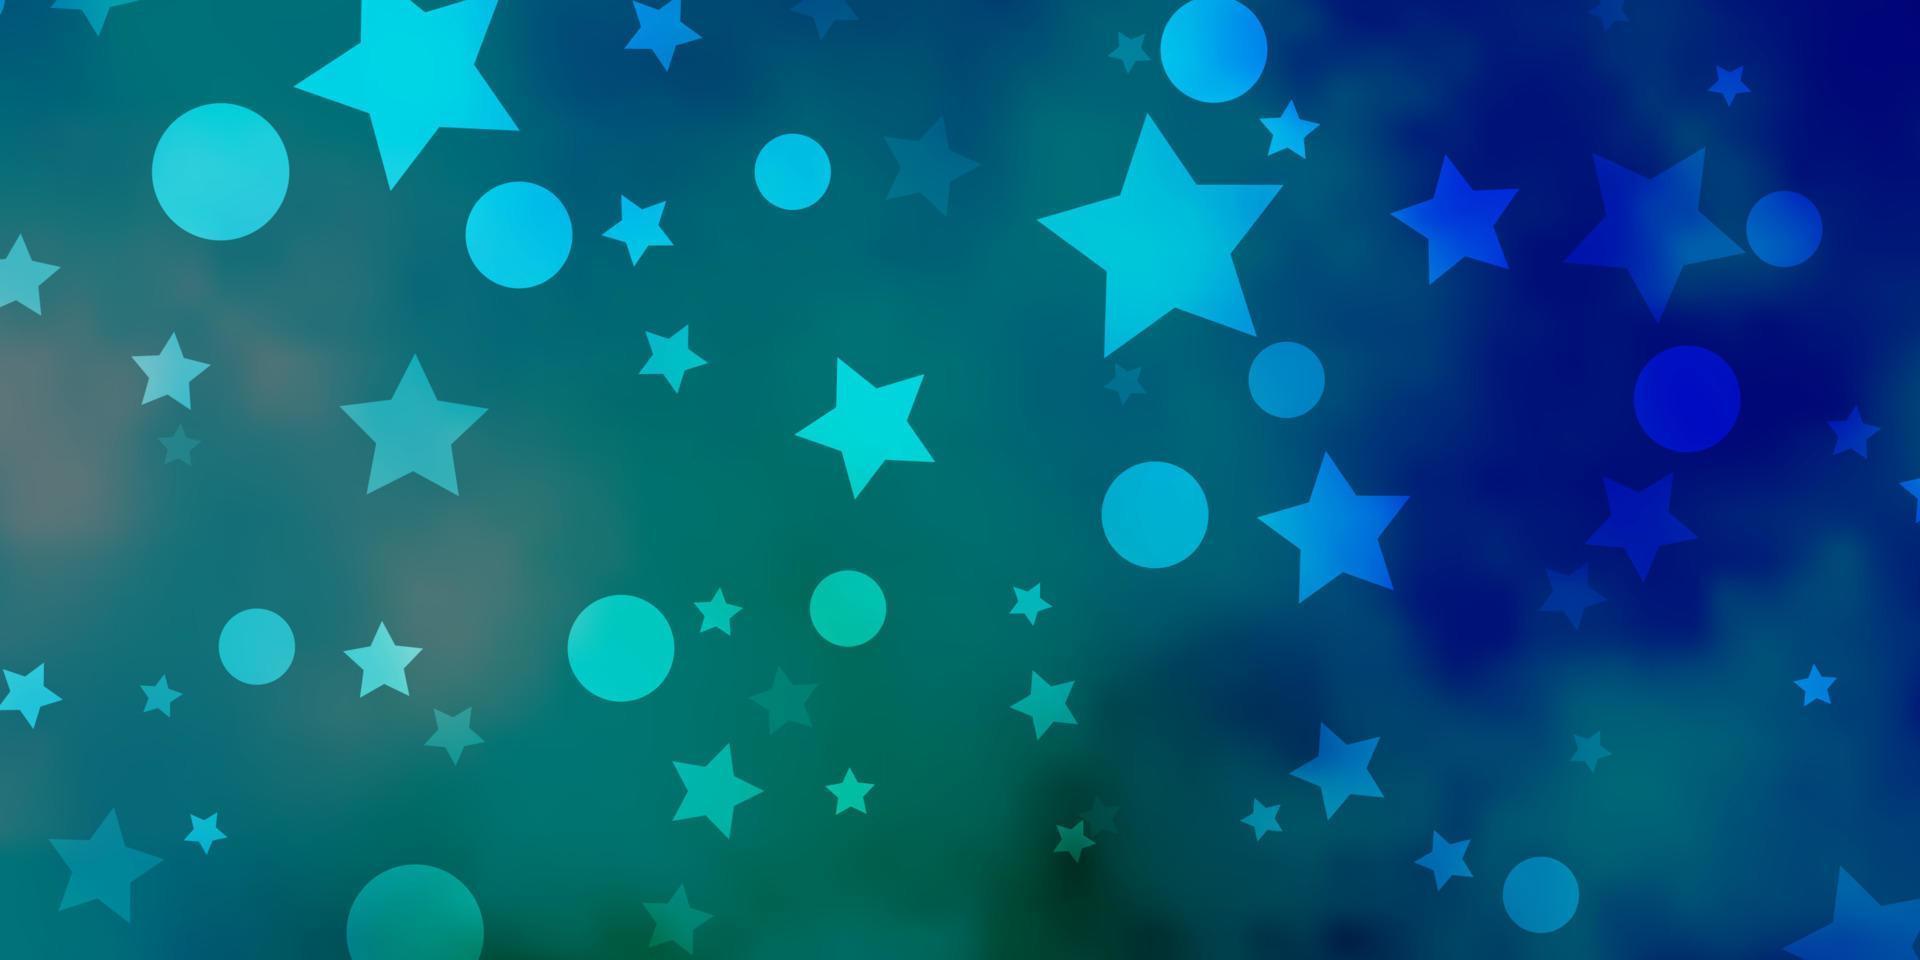 toile de fond de vecteur bleu clair, vert avec des cercles, des étoiles.